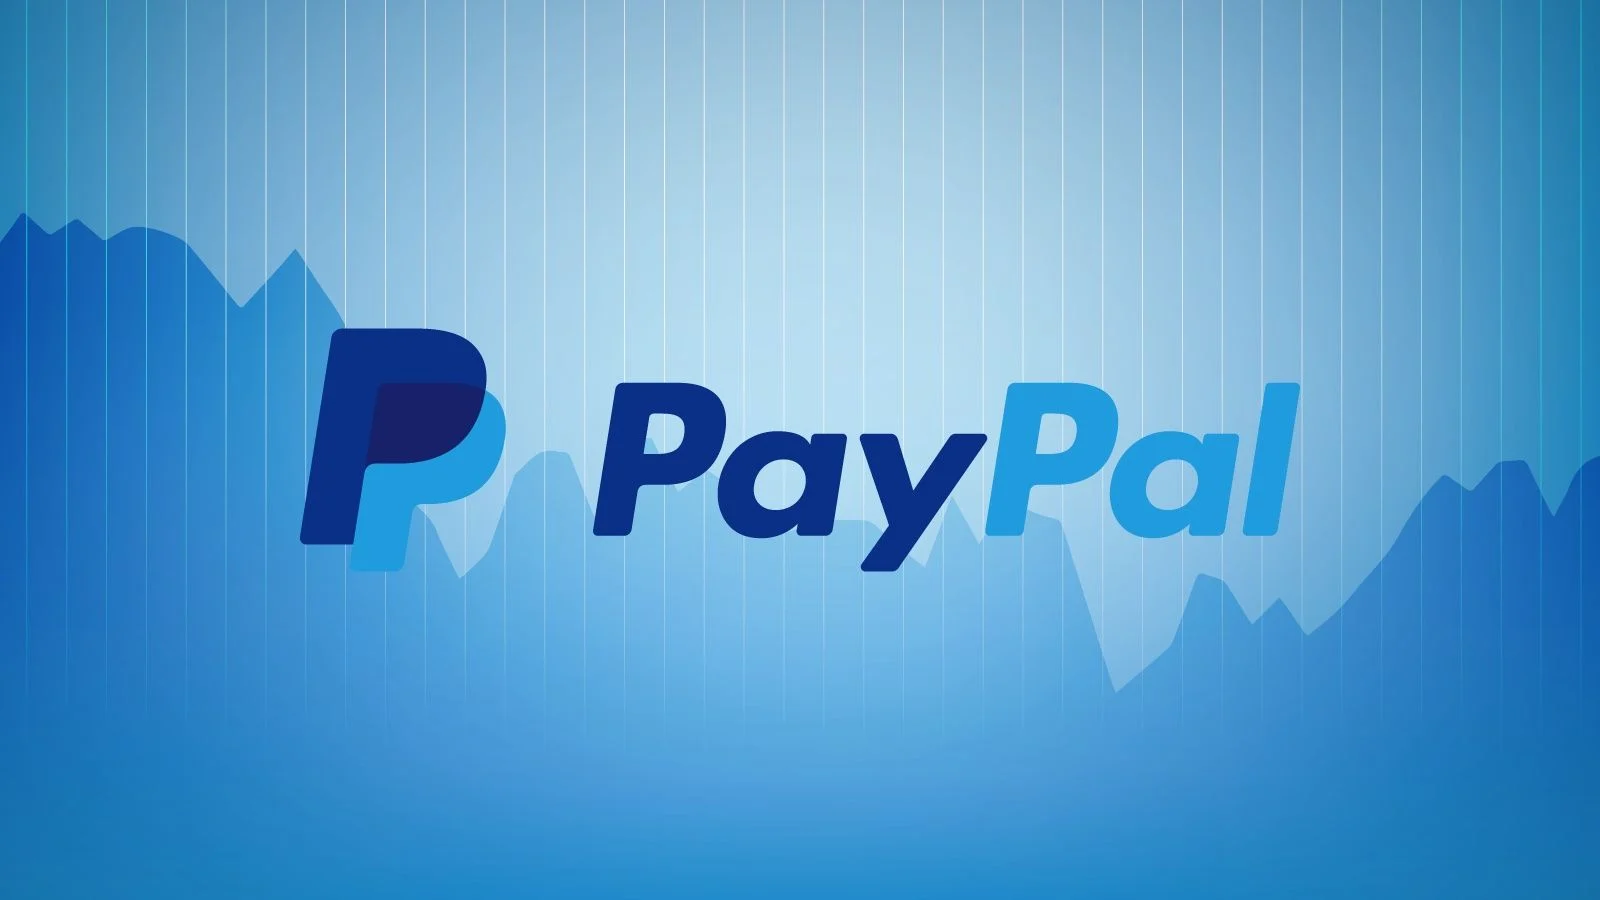 Cara Pindahkan Saldo PayPal ke DANA (sumber: wallpaperaccess.com)